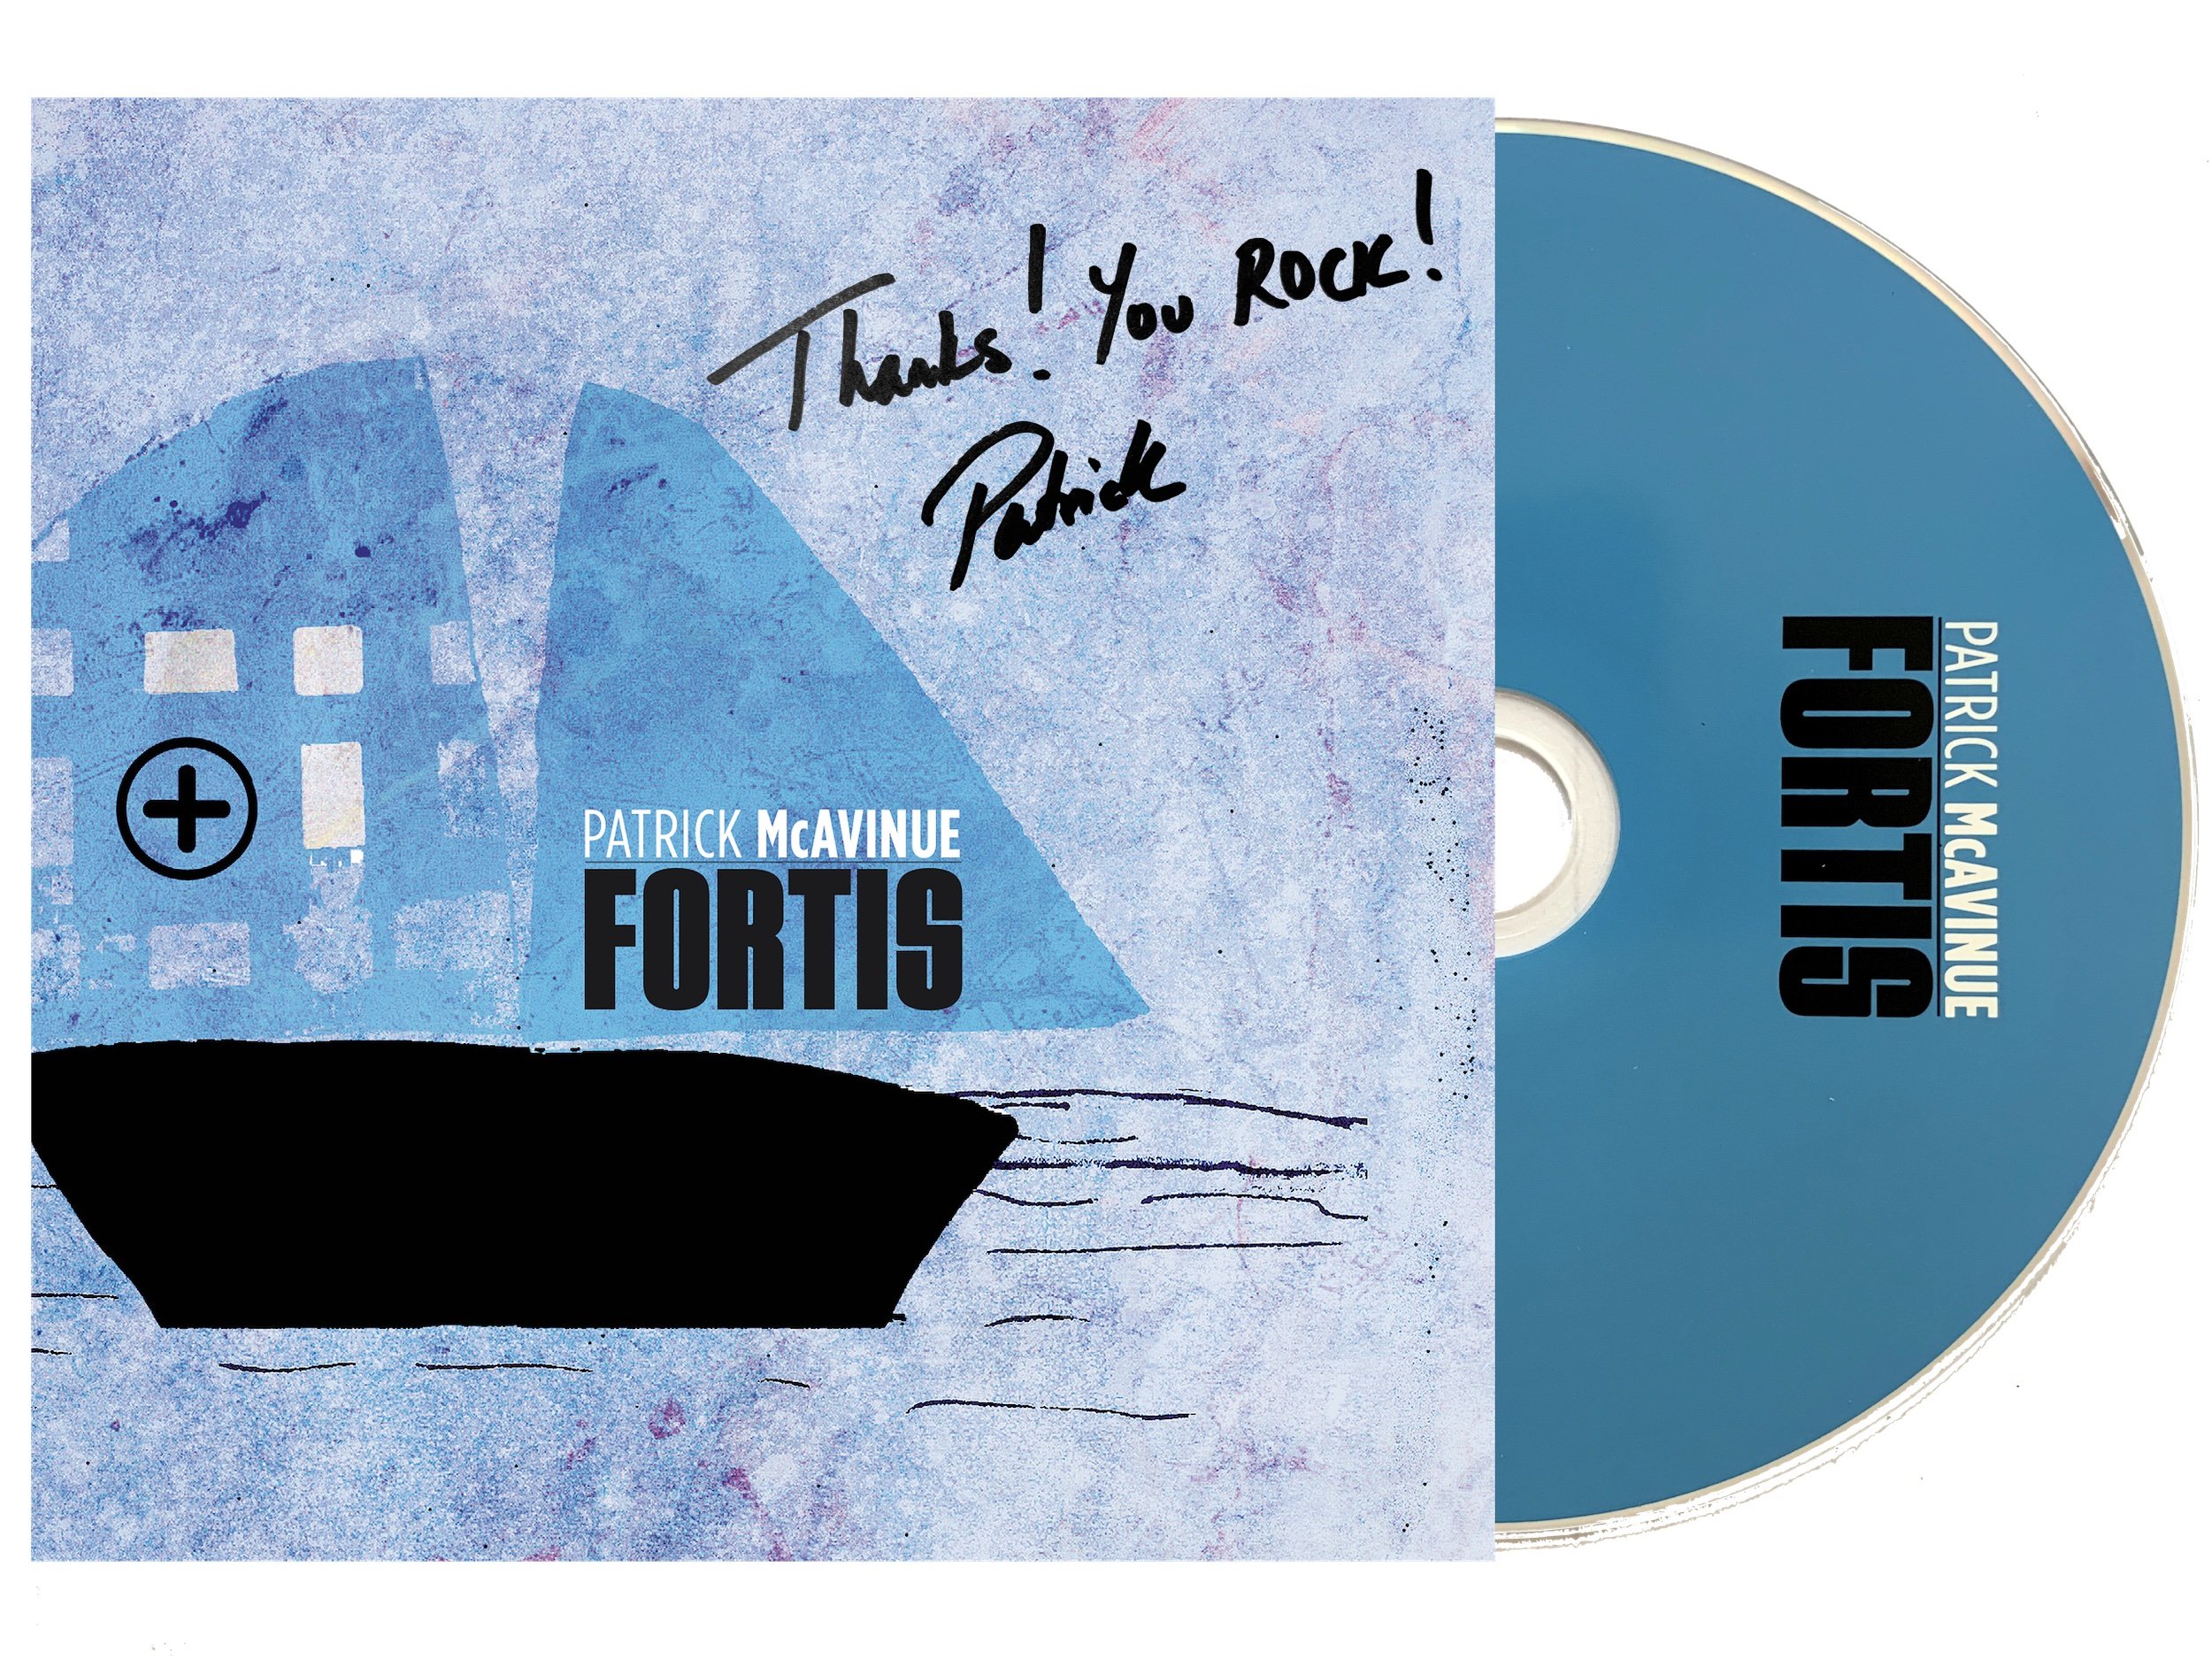 Fortis CD Image Signed.jpg